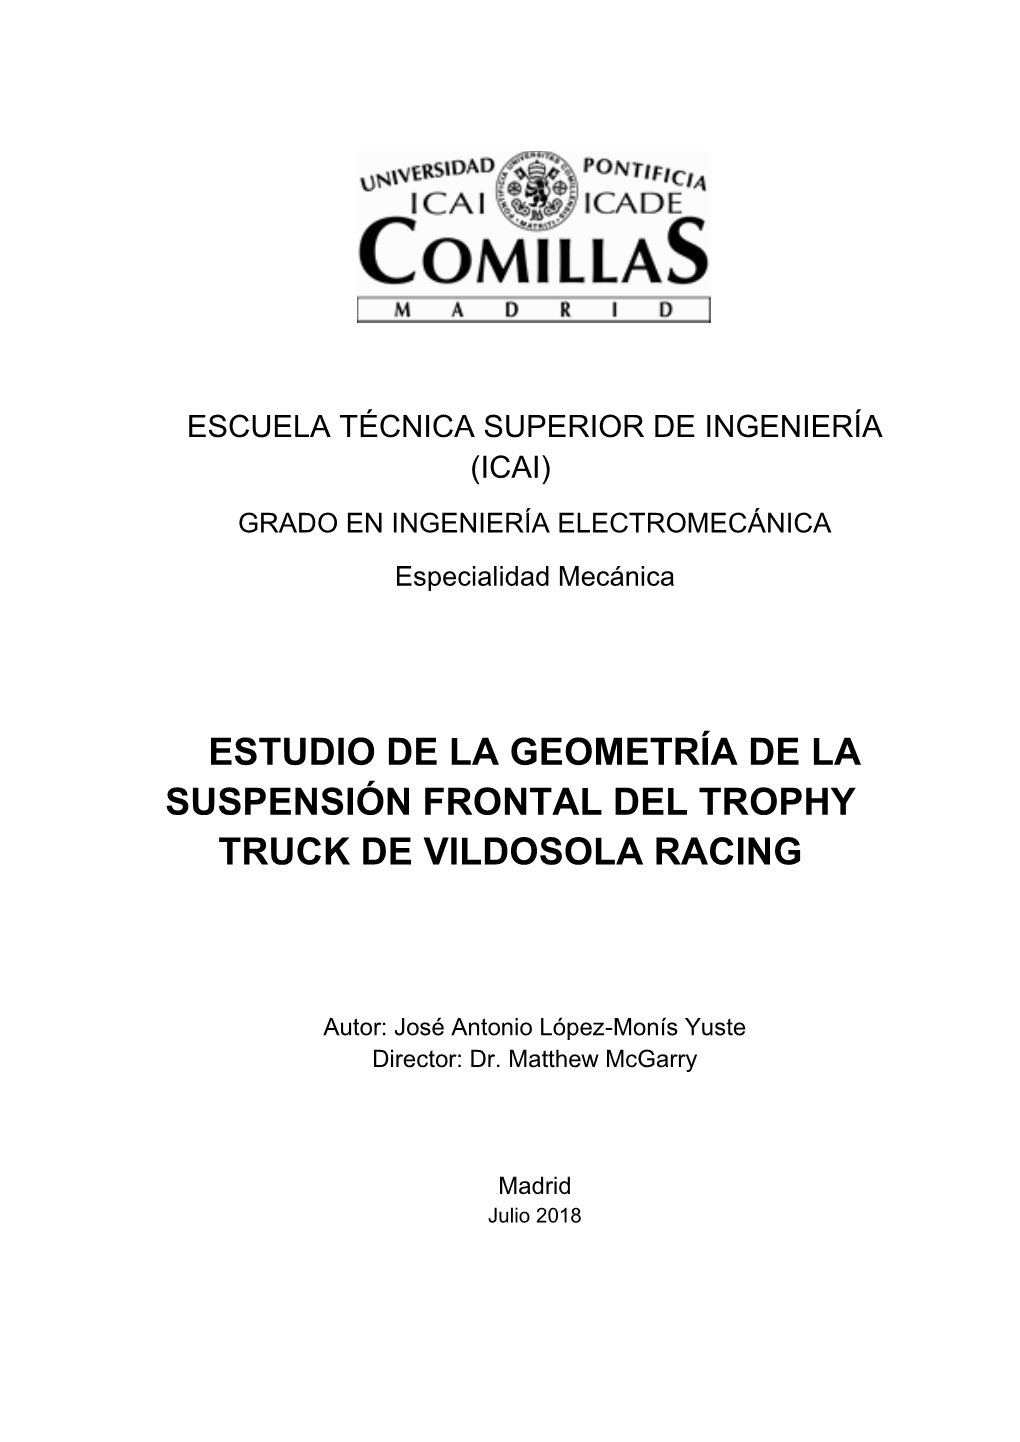 Estudio De La Geometría De La Suspensión Frontal Del Trophy Truck De Vildosola Racing